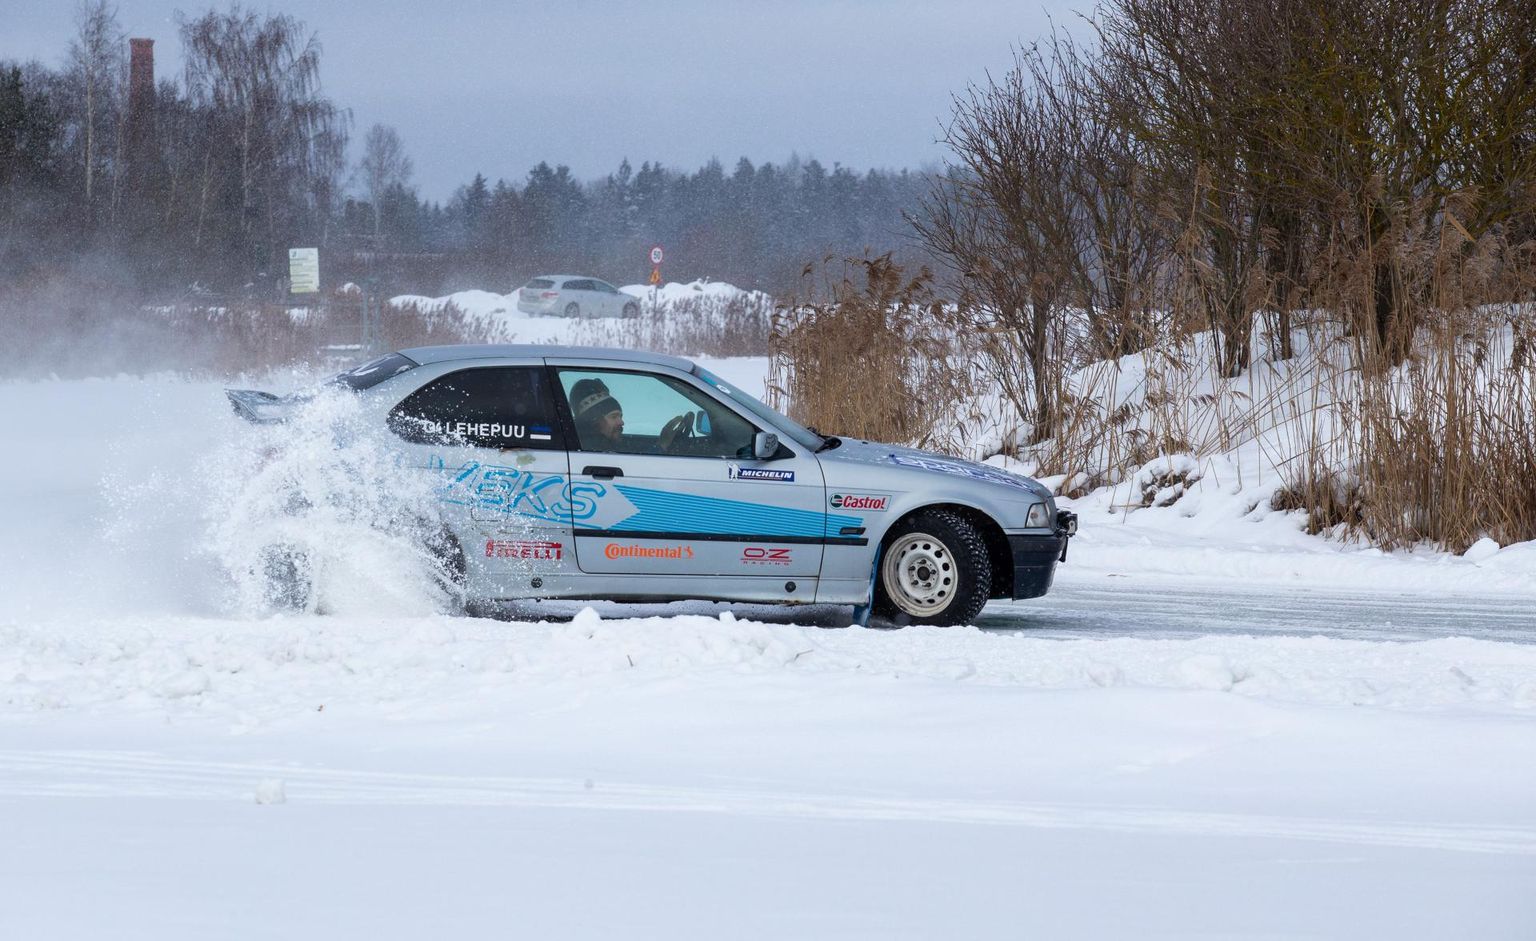 Homsest on Ilmatsalu järve peal avatud jäärada, kus saab proovile panna auto kontrollimise oskusi.